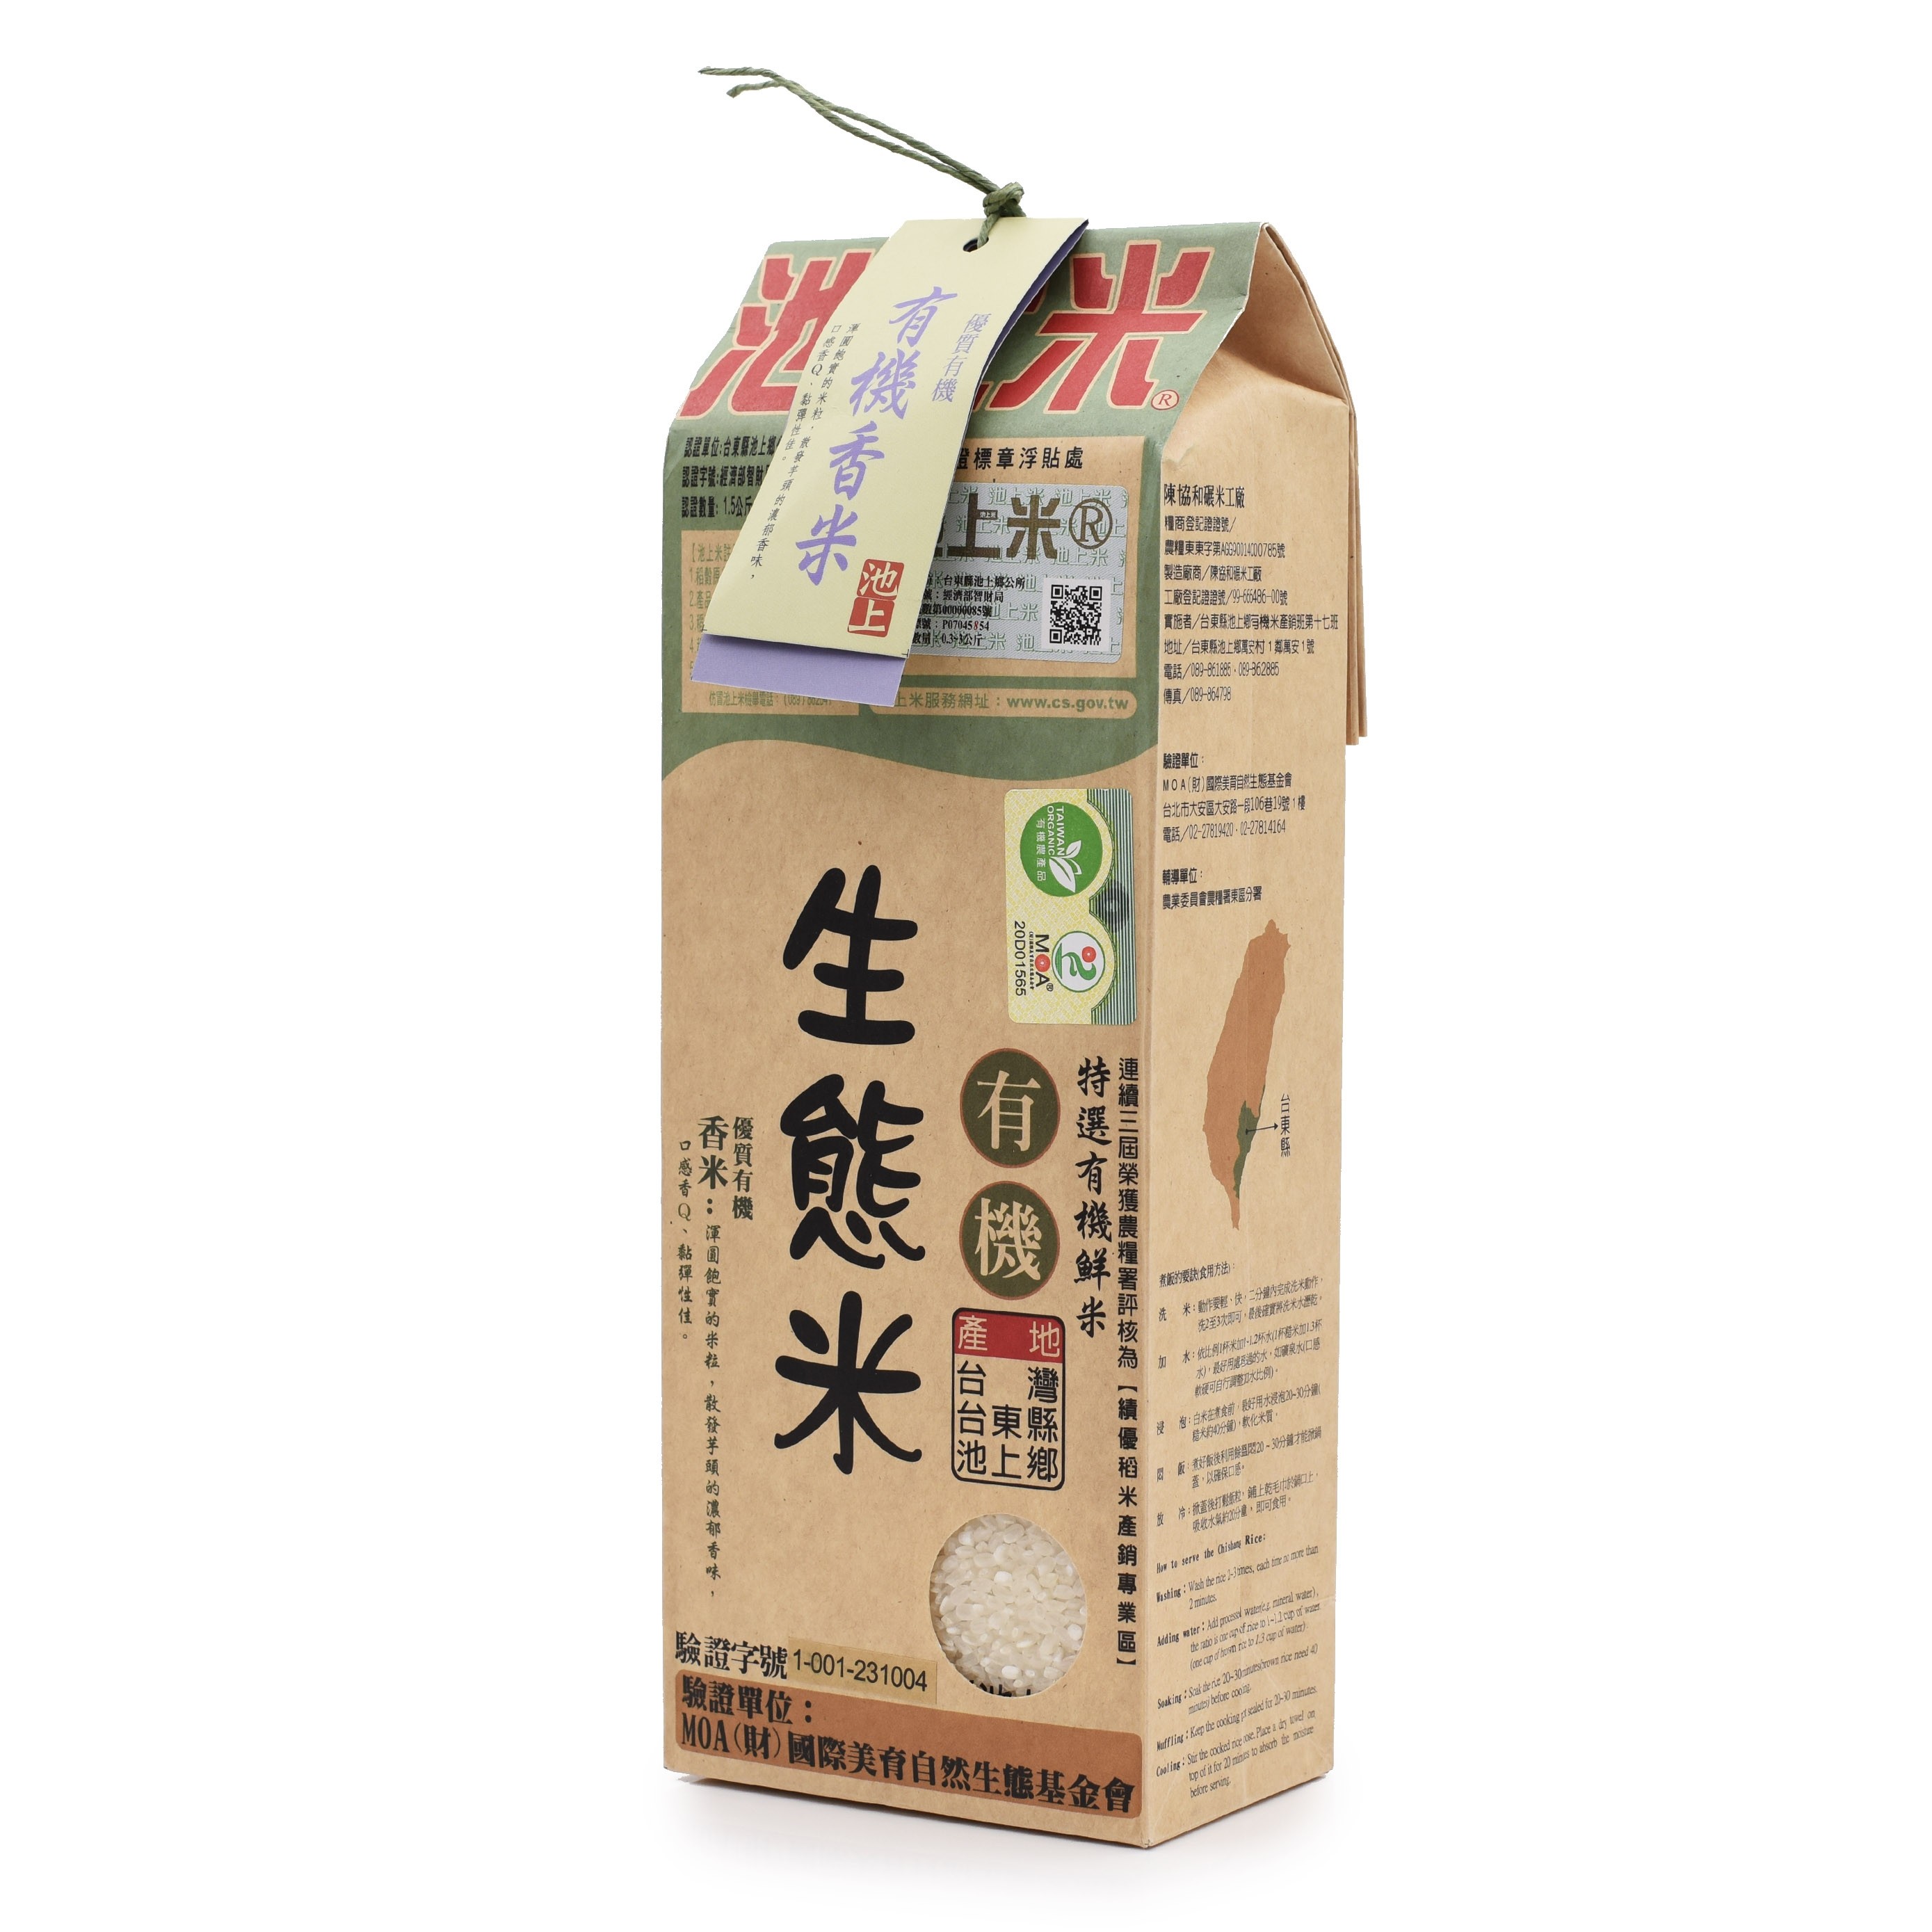 陳協和池上米有機生態香芋白米 ORGANIC TARO RICE